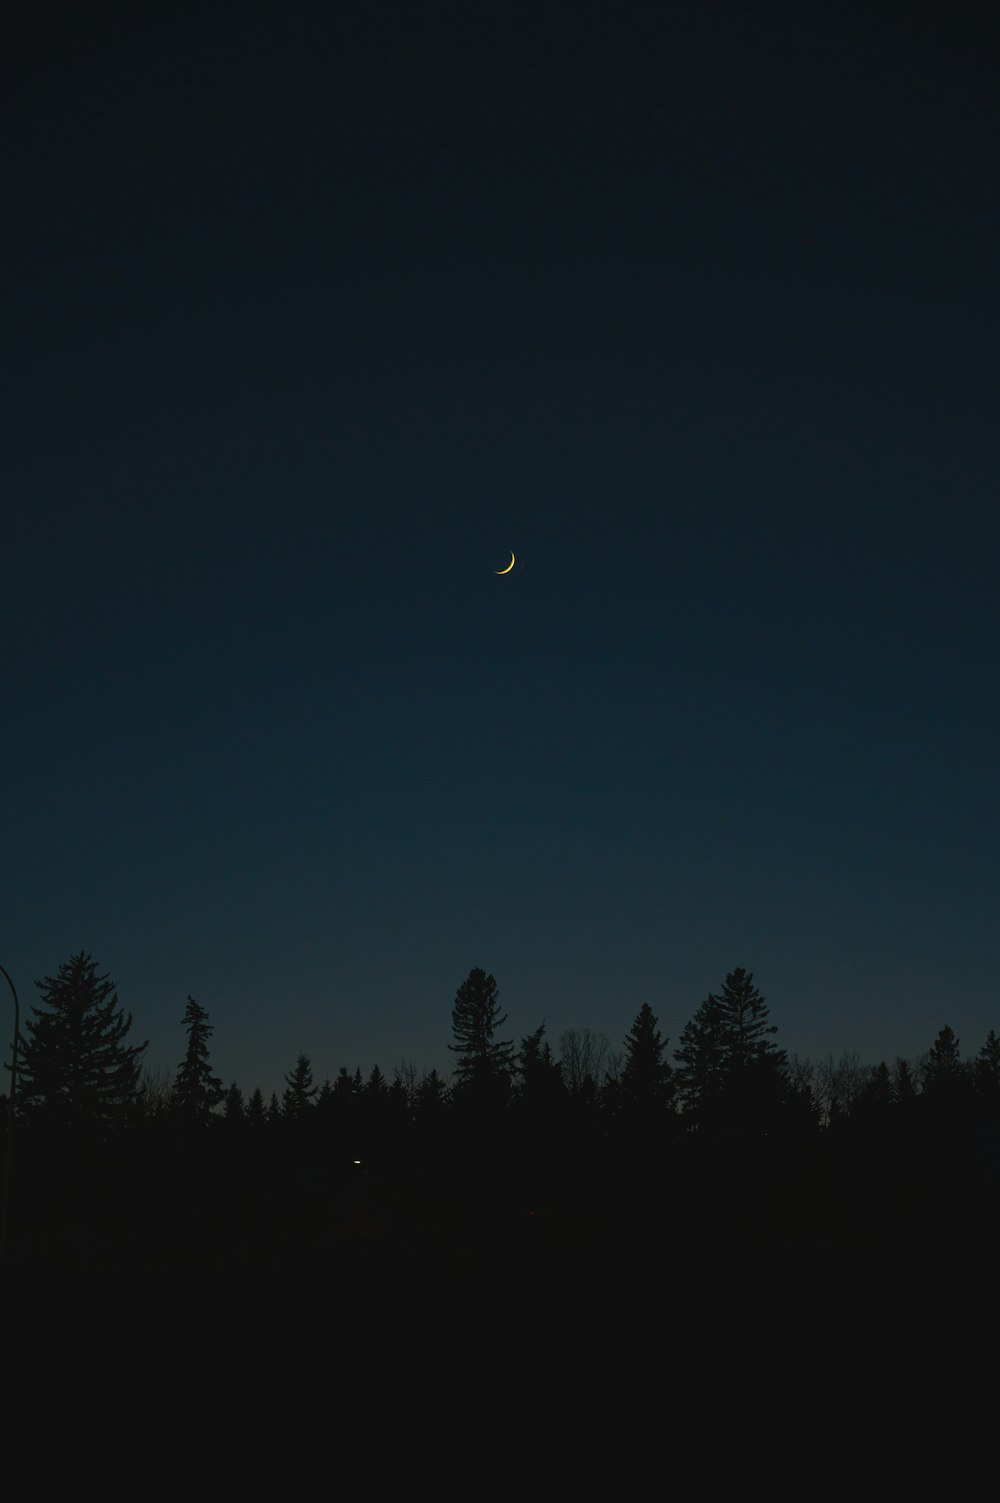 silueta de árboles bajo el cielo azul durante la noche